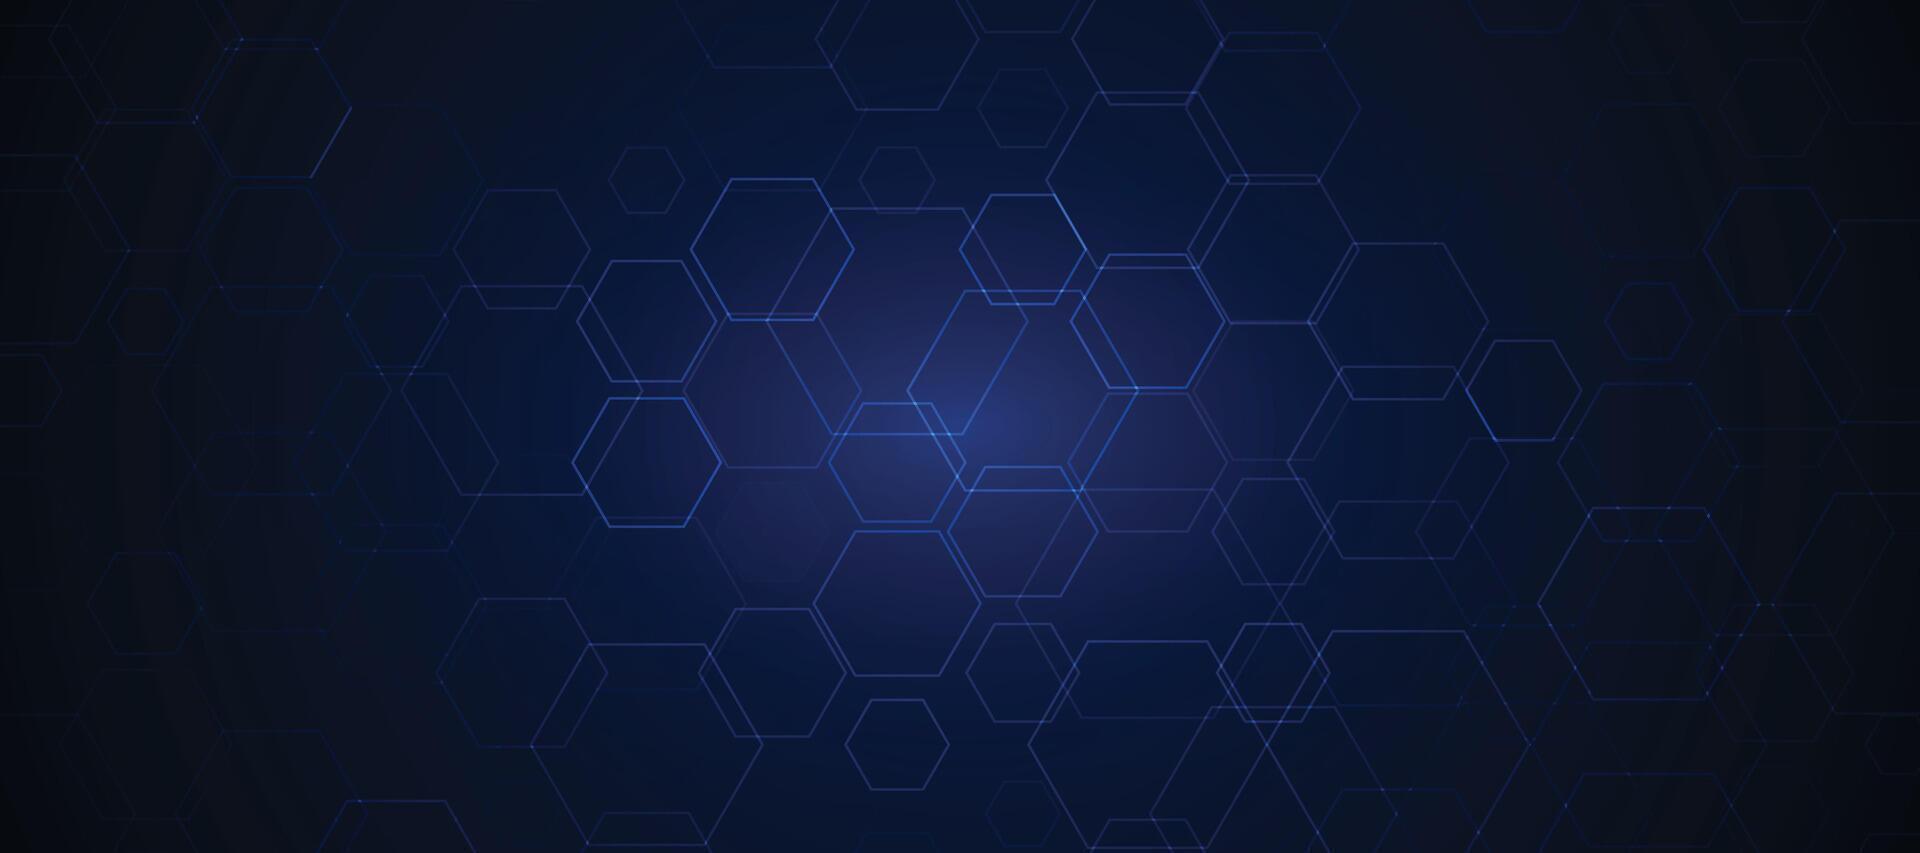 abstrakt blå hexagonal bakgrund för trogen digital hi-tech kommunikation innovation design. vektor